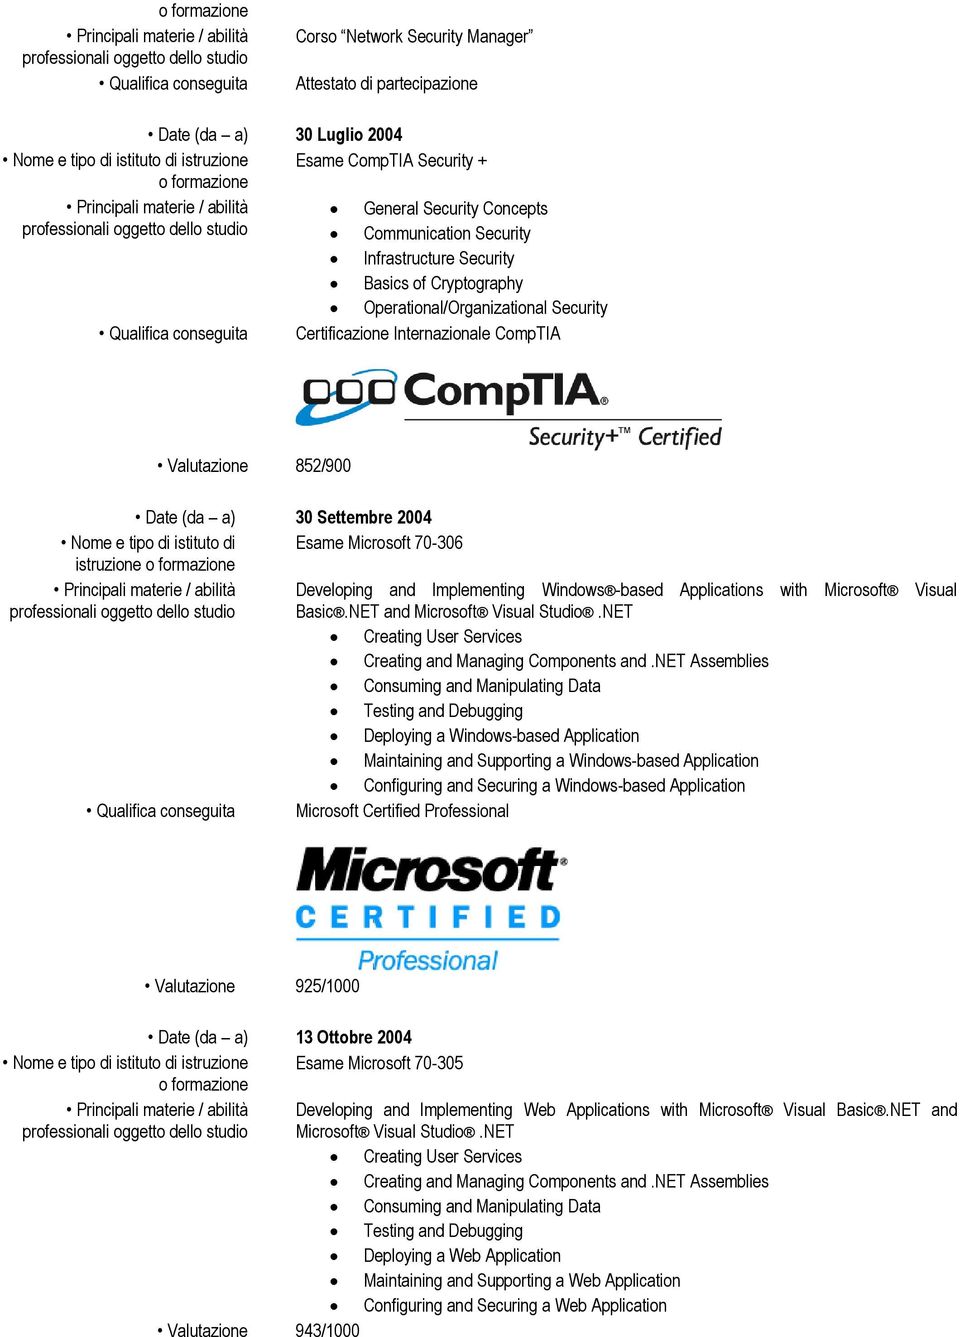 Internazionale CompTIA Valutazione 852/900 Date (da a) 30 Settembre 2004 Nome e tipo di istituto di Esame Microsoft 70-306 istruzione Principali materie / abilità Developing and Implementing Windows